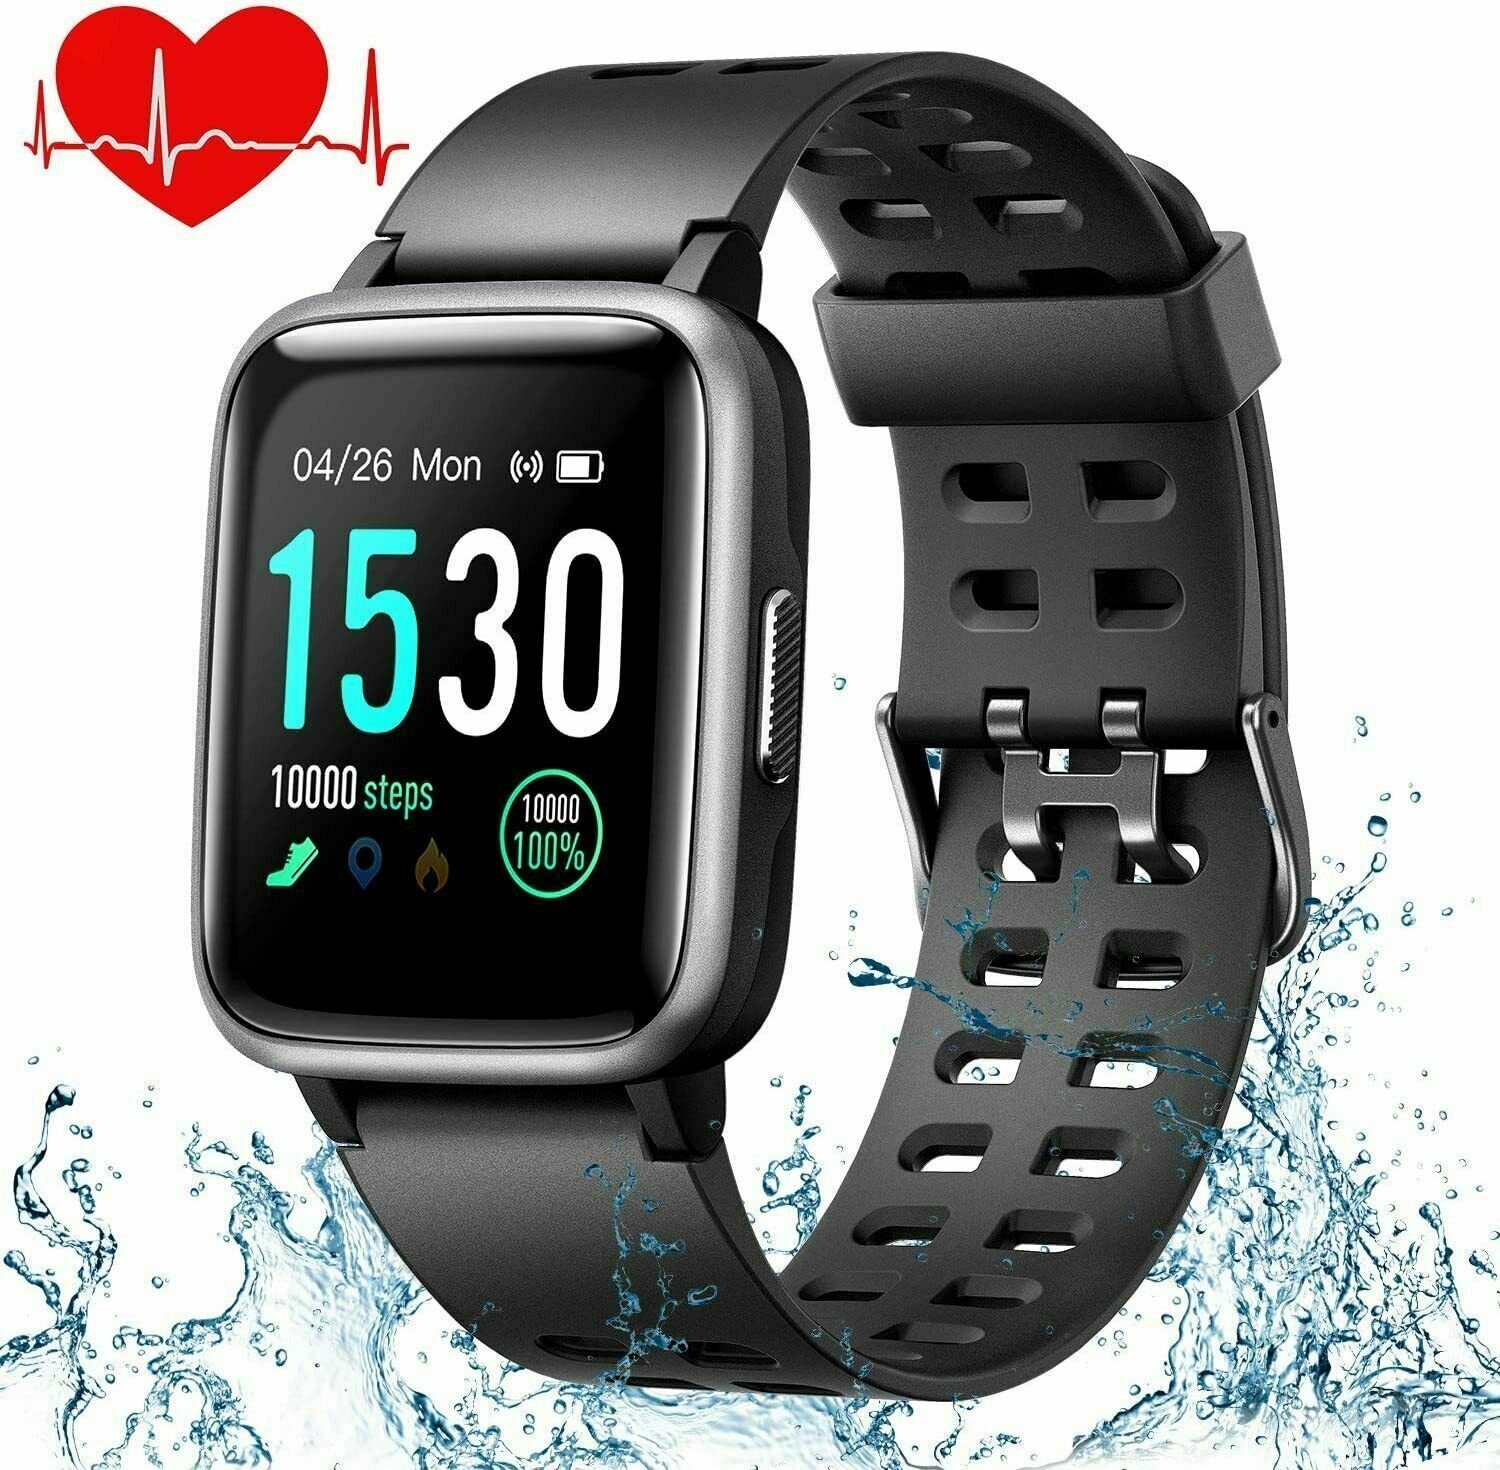 100% Activity Tracker »YAMAY Smartwatch Fitness Tracker mit Pulsmesser  Wasserdicht IP68 Fitness Uhr Messgeräte Pulsuhr Schrittzähler Uhr schwarz«